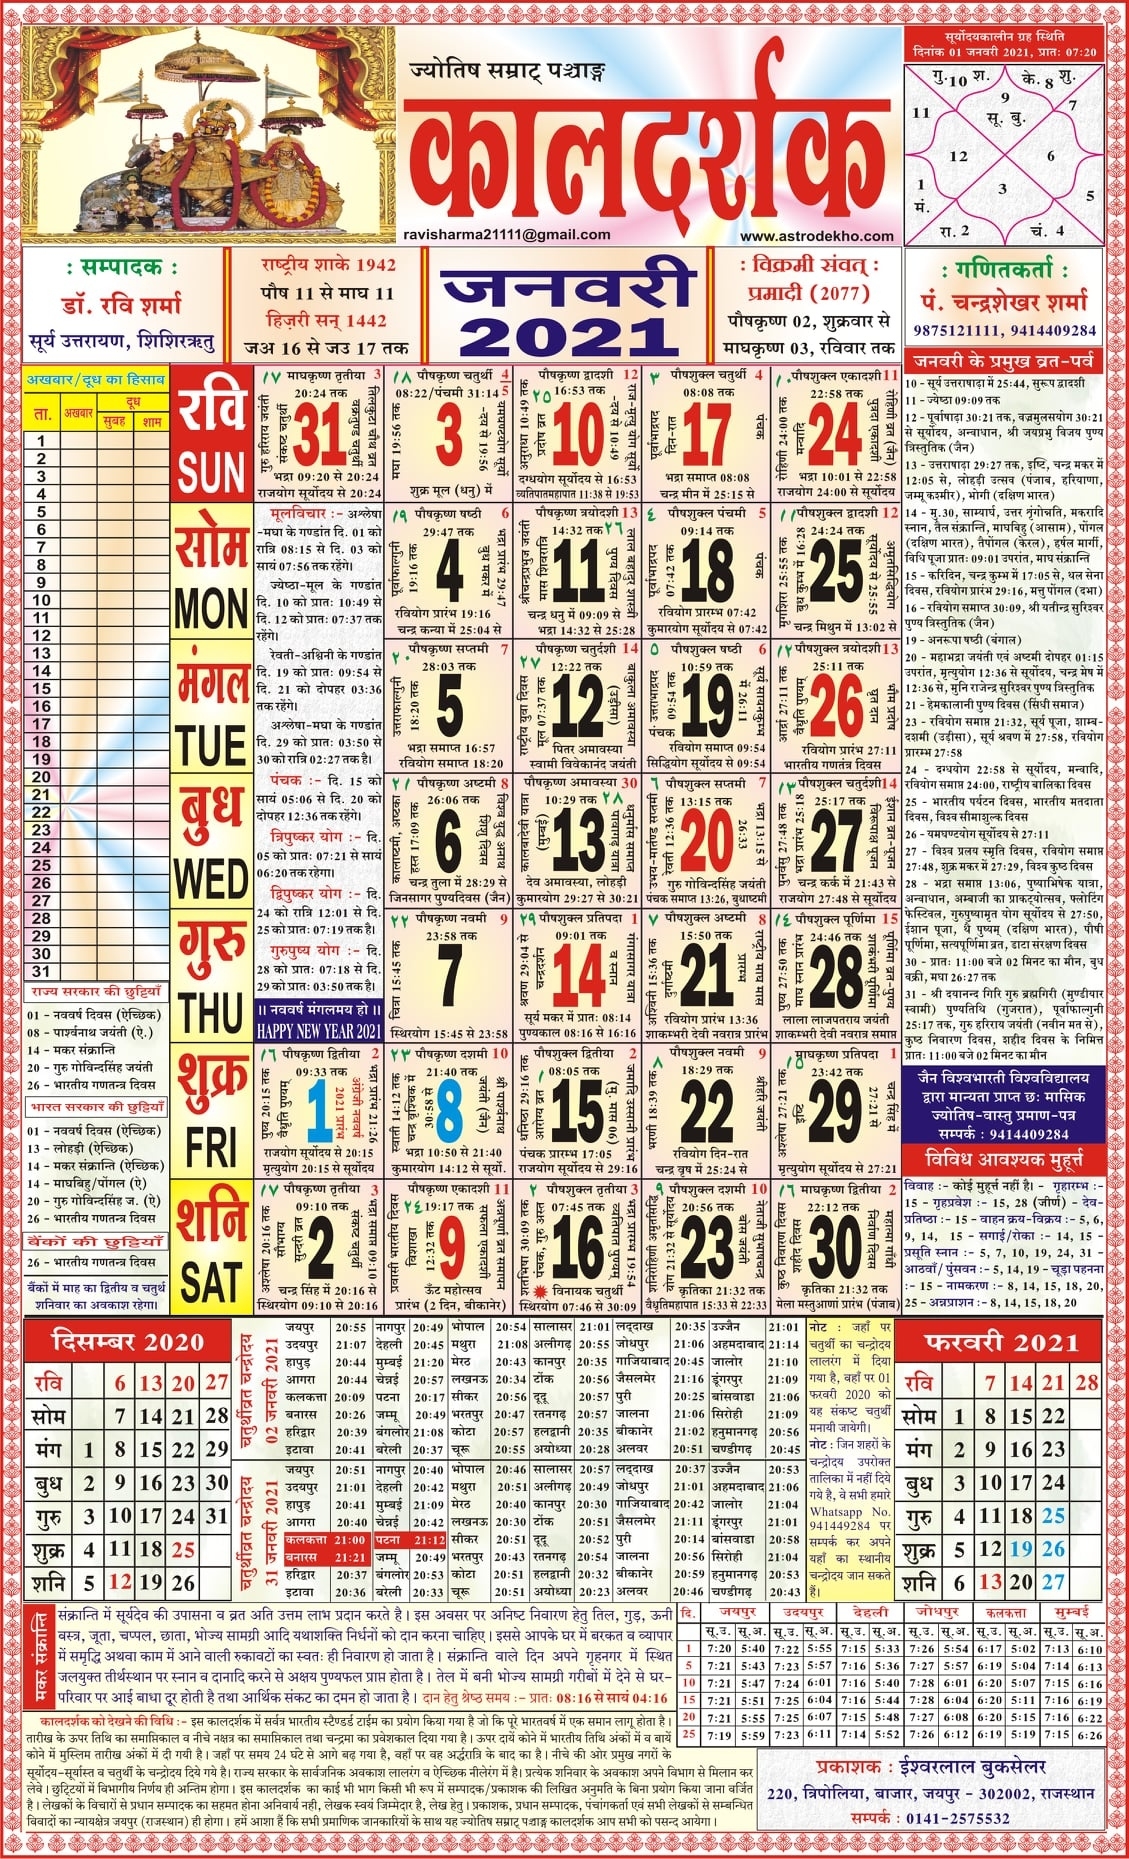 2021 Calendar Hindi - Nexta June 2021 Calendar Hindi